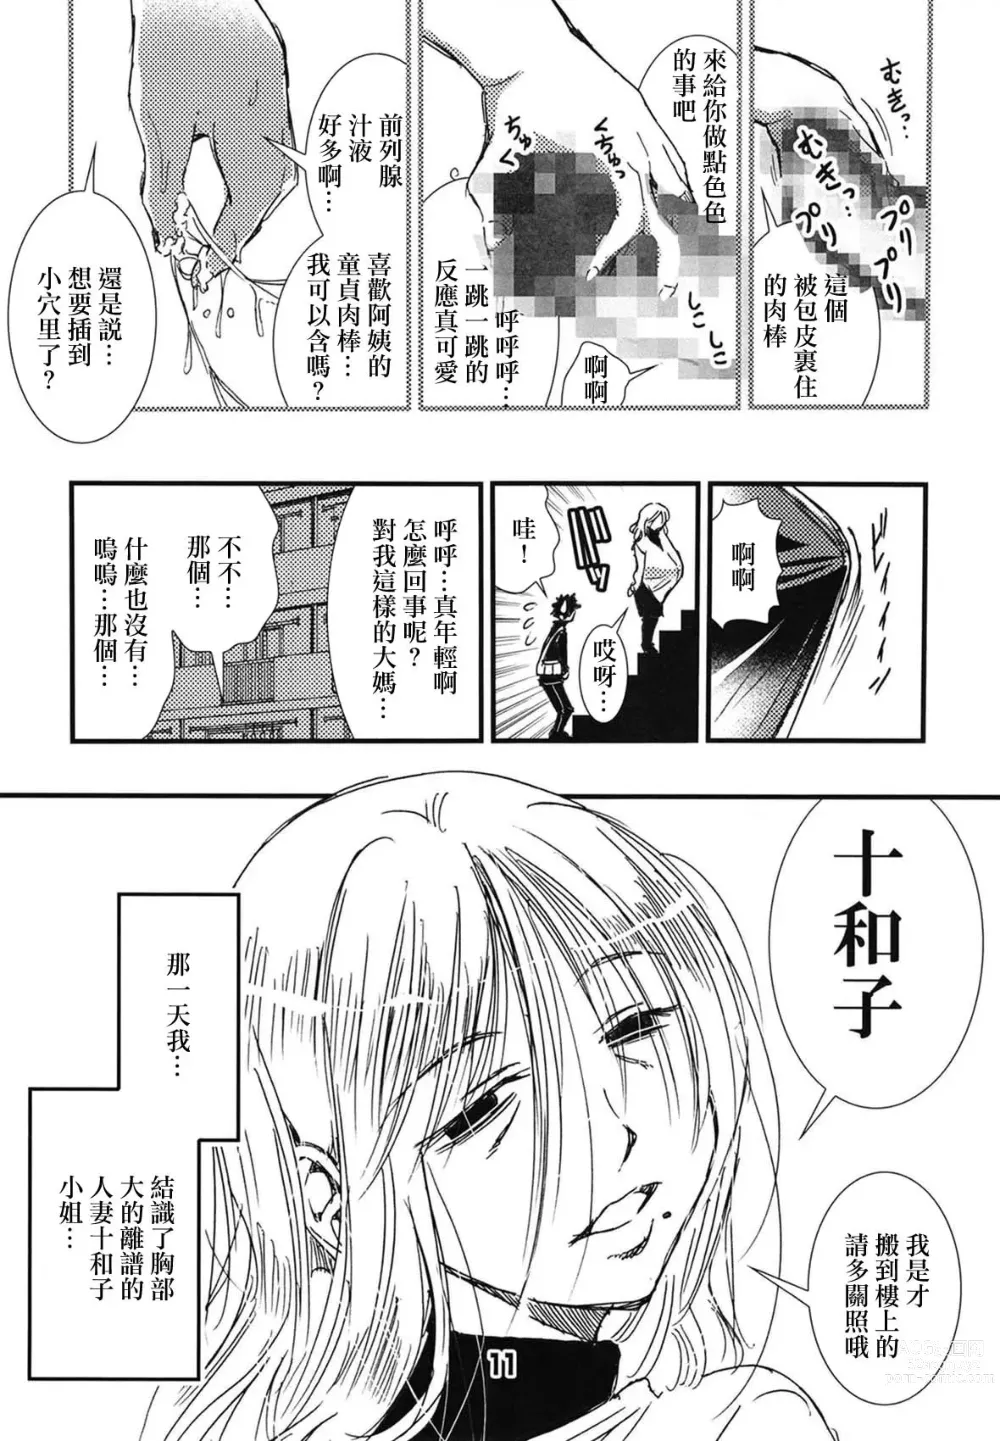 Page 10 of doujinshi 56-sai Bust 256cm Danchizuma Ookiku Tareta Jukujo no Chibusa... Boku wa Kono Hito de Doutei o Sotsugyou Shita.